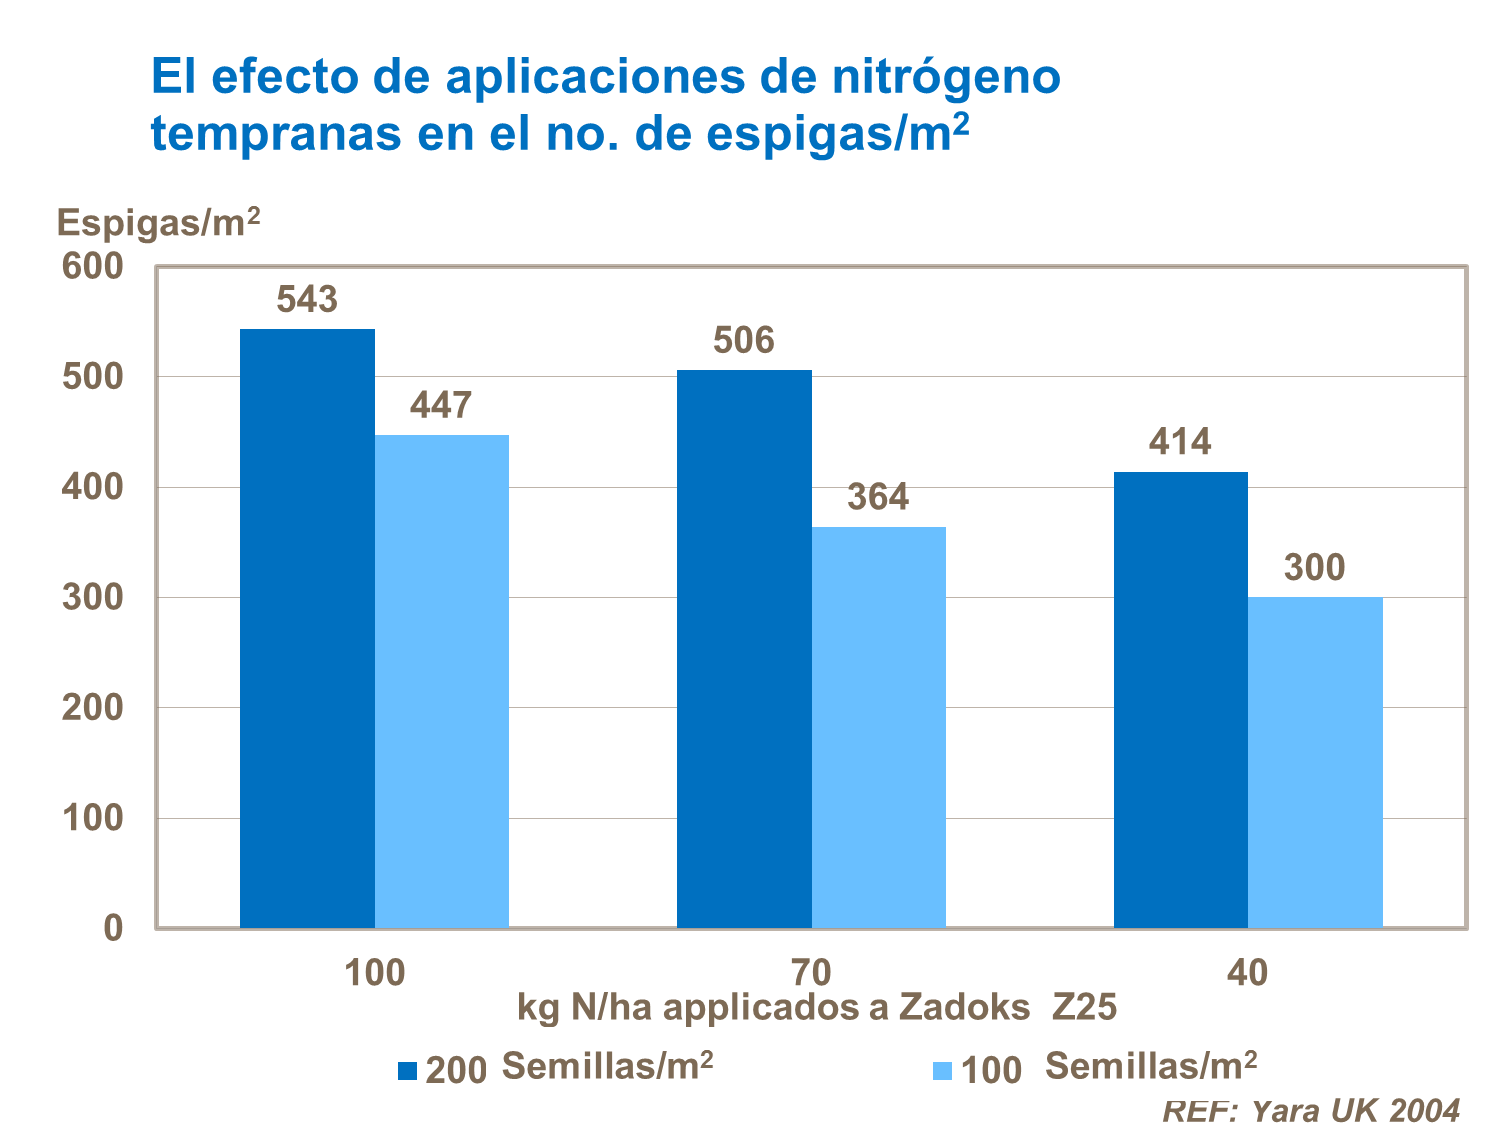 El efecto de aplicaciones de nitrógeno tempranas en el no. de espigas